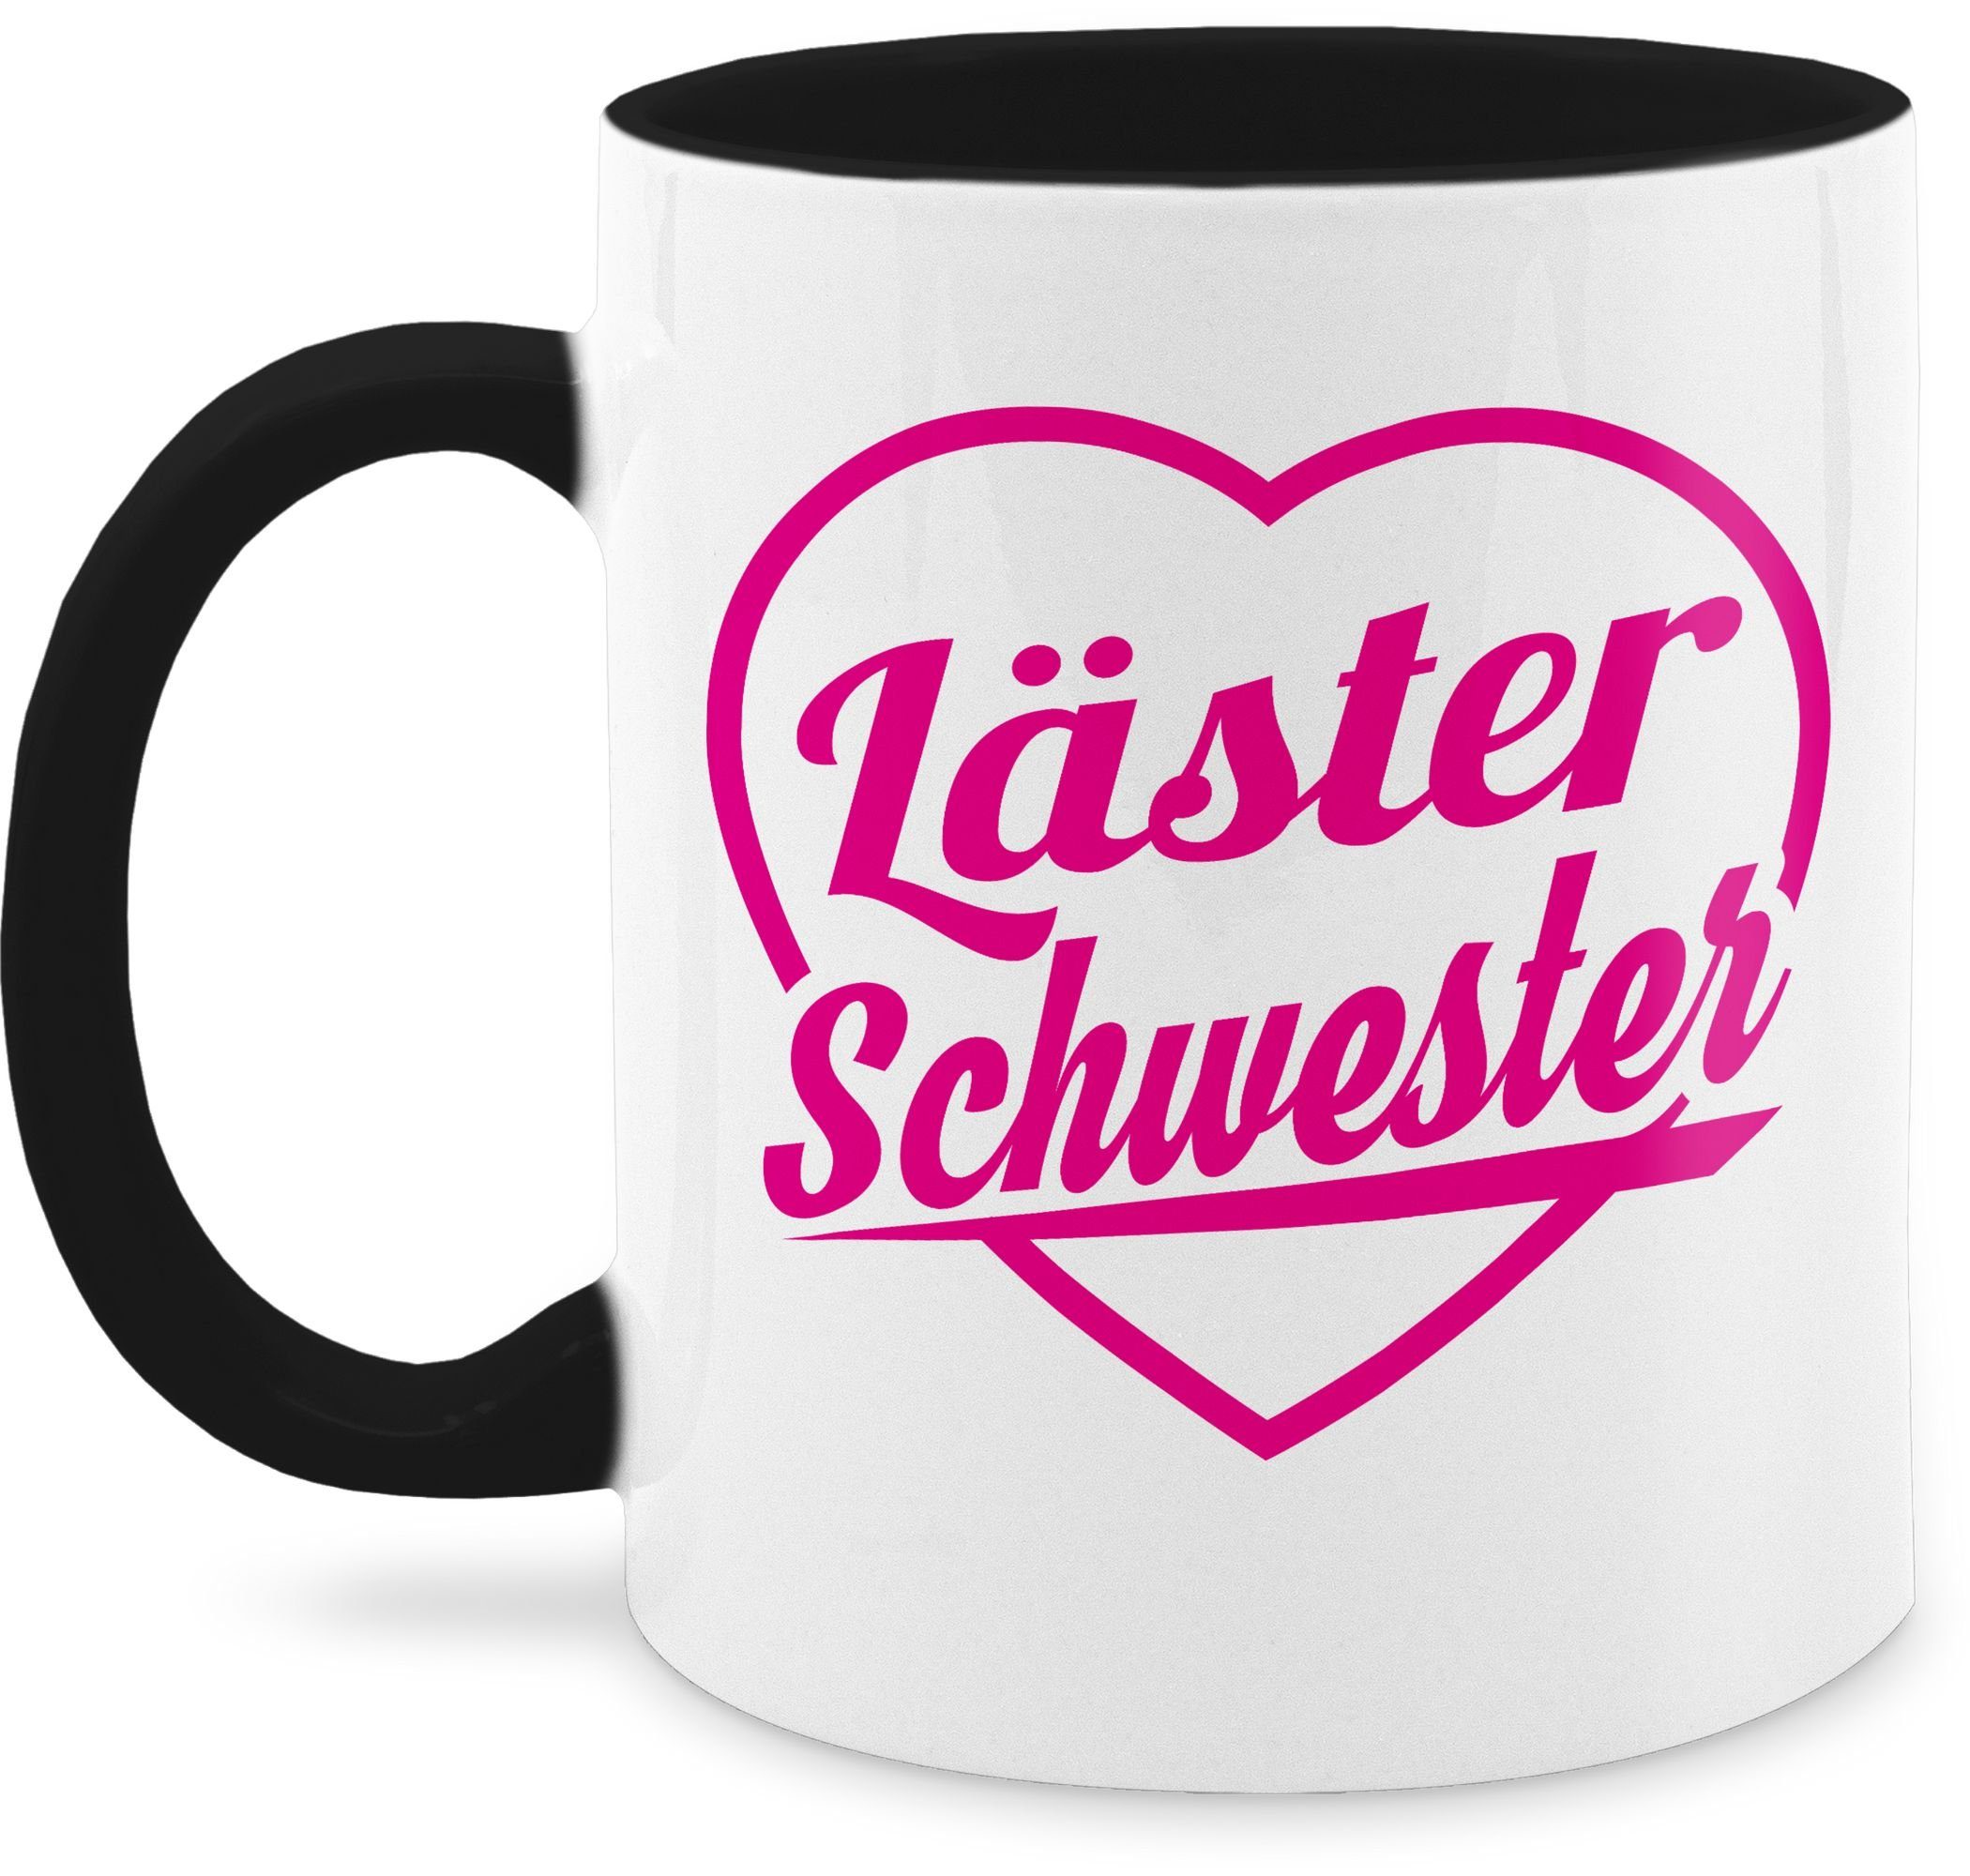 Shirtracer Läster 2 fuchsia, Keramik, Schwarz & Bruder Kaffeetasse Tasse - Schwester Schwester